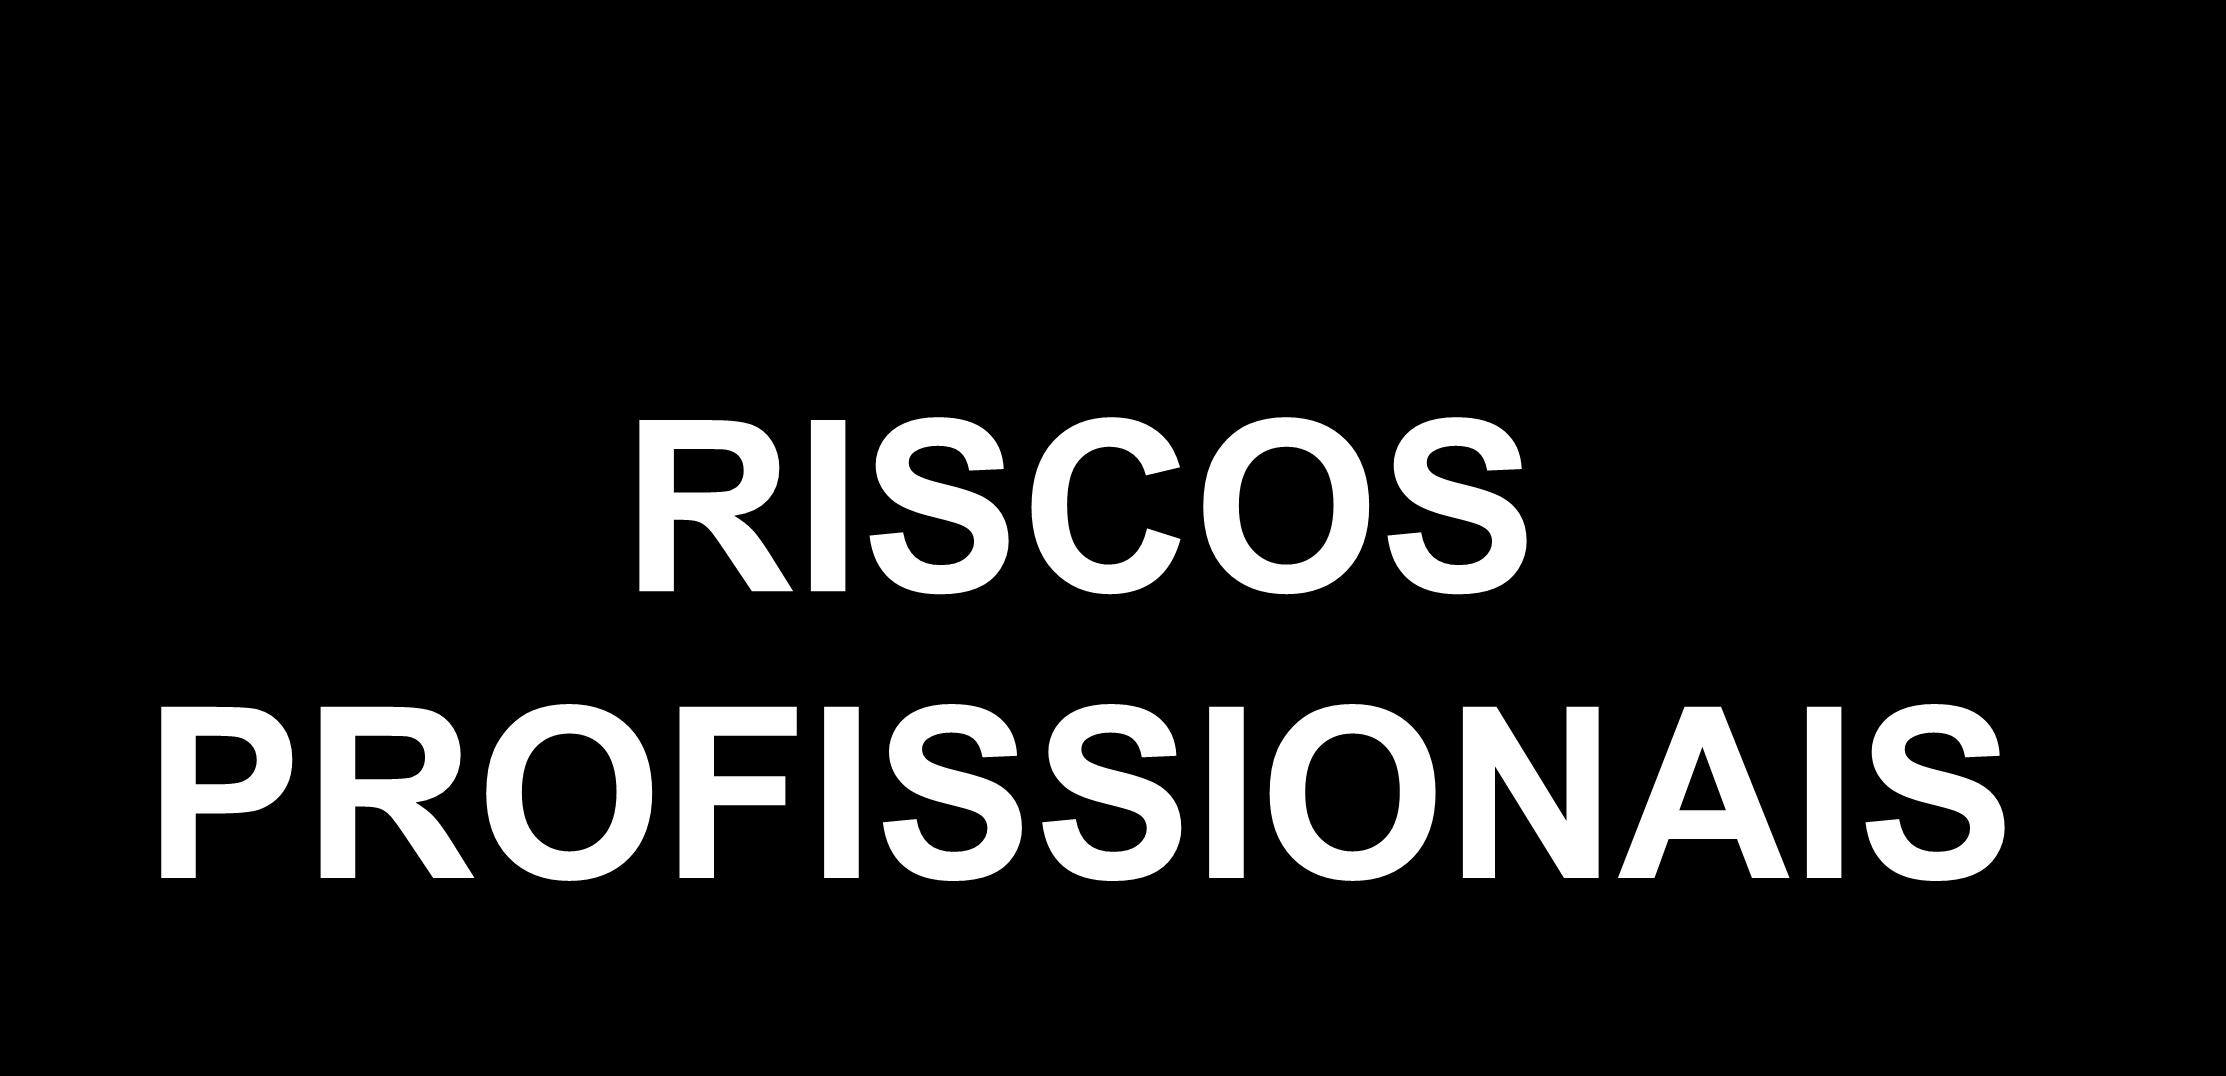 RISCOS PROFISSIONAIS 2